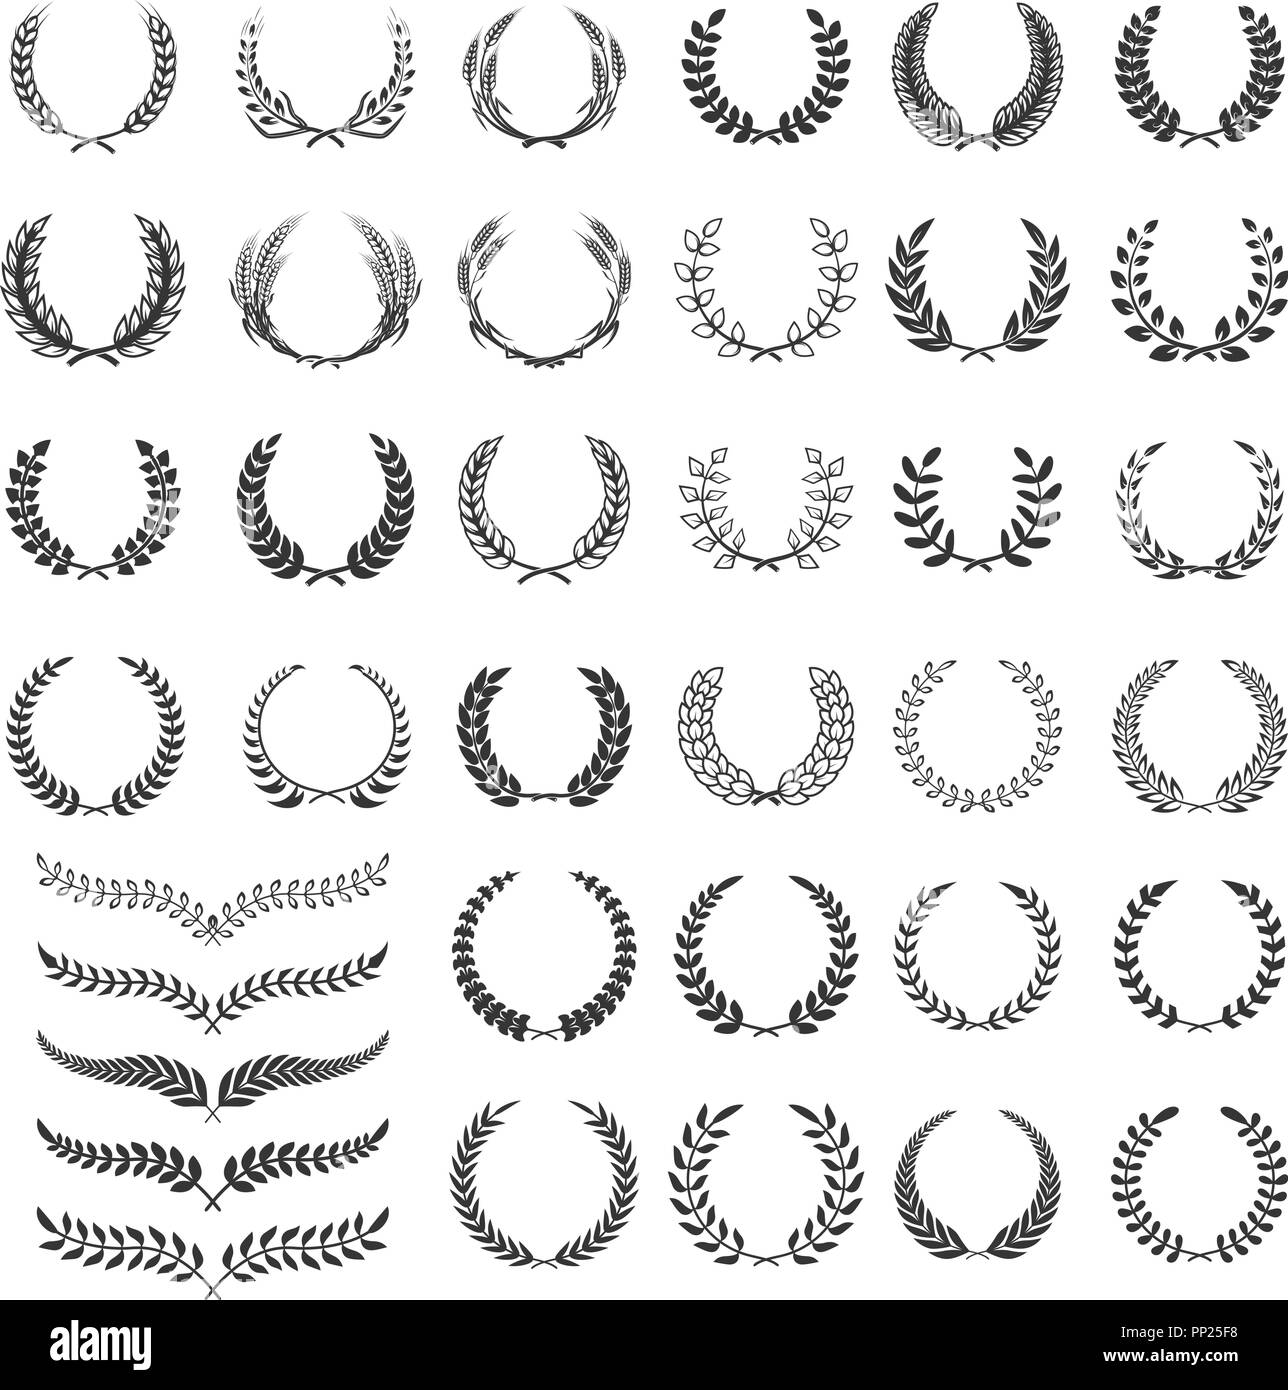 Set of laurel wreath icons. Design element for logo, label, emblem, sign. Vector illustration Stock Vector